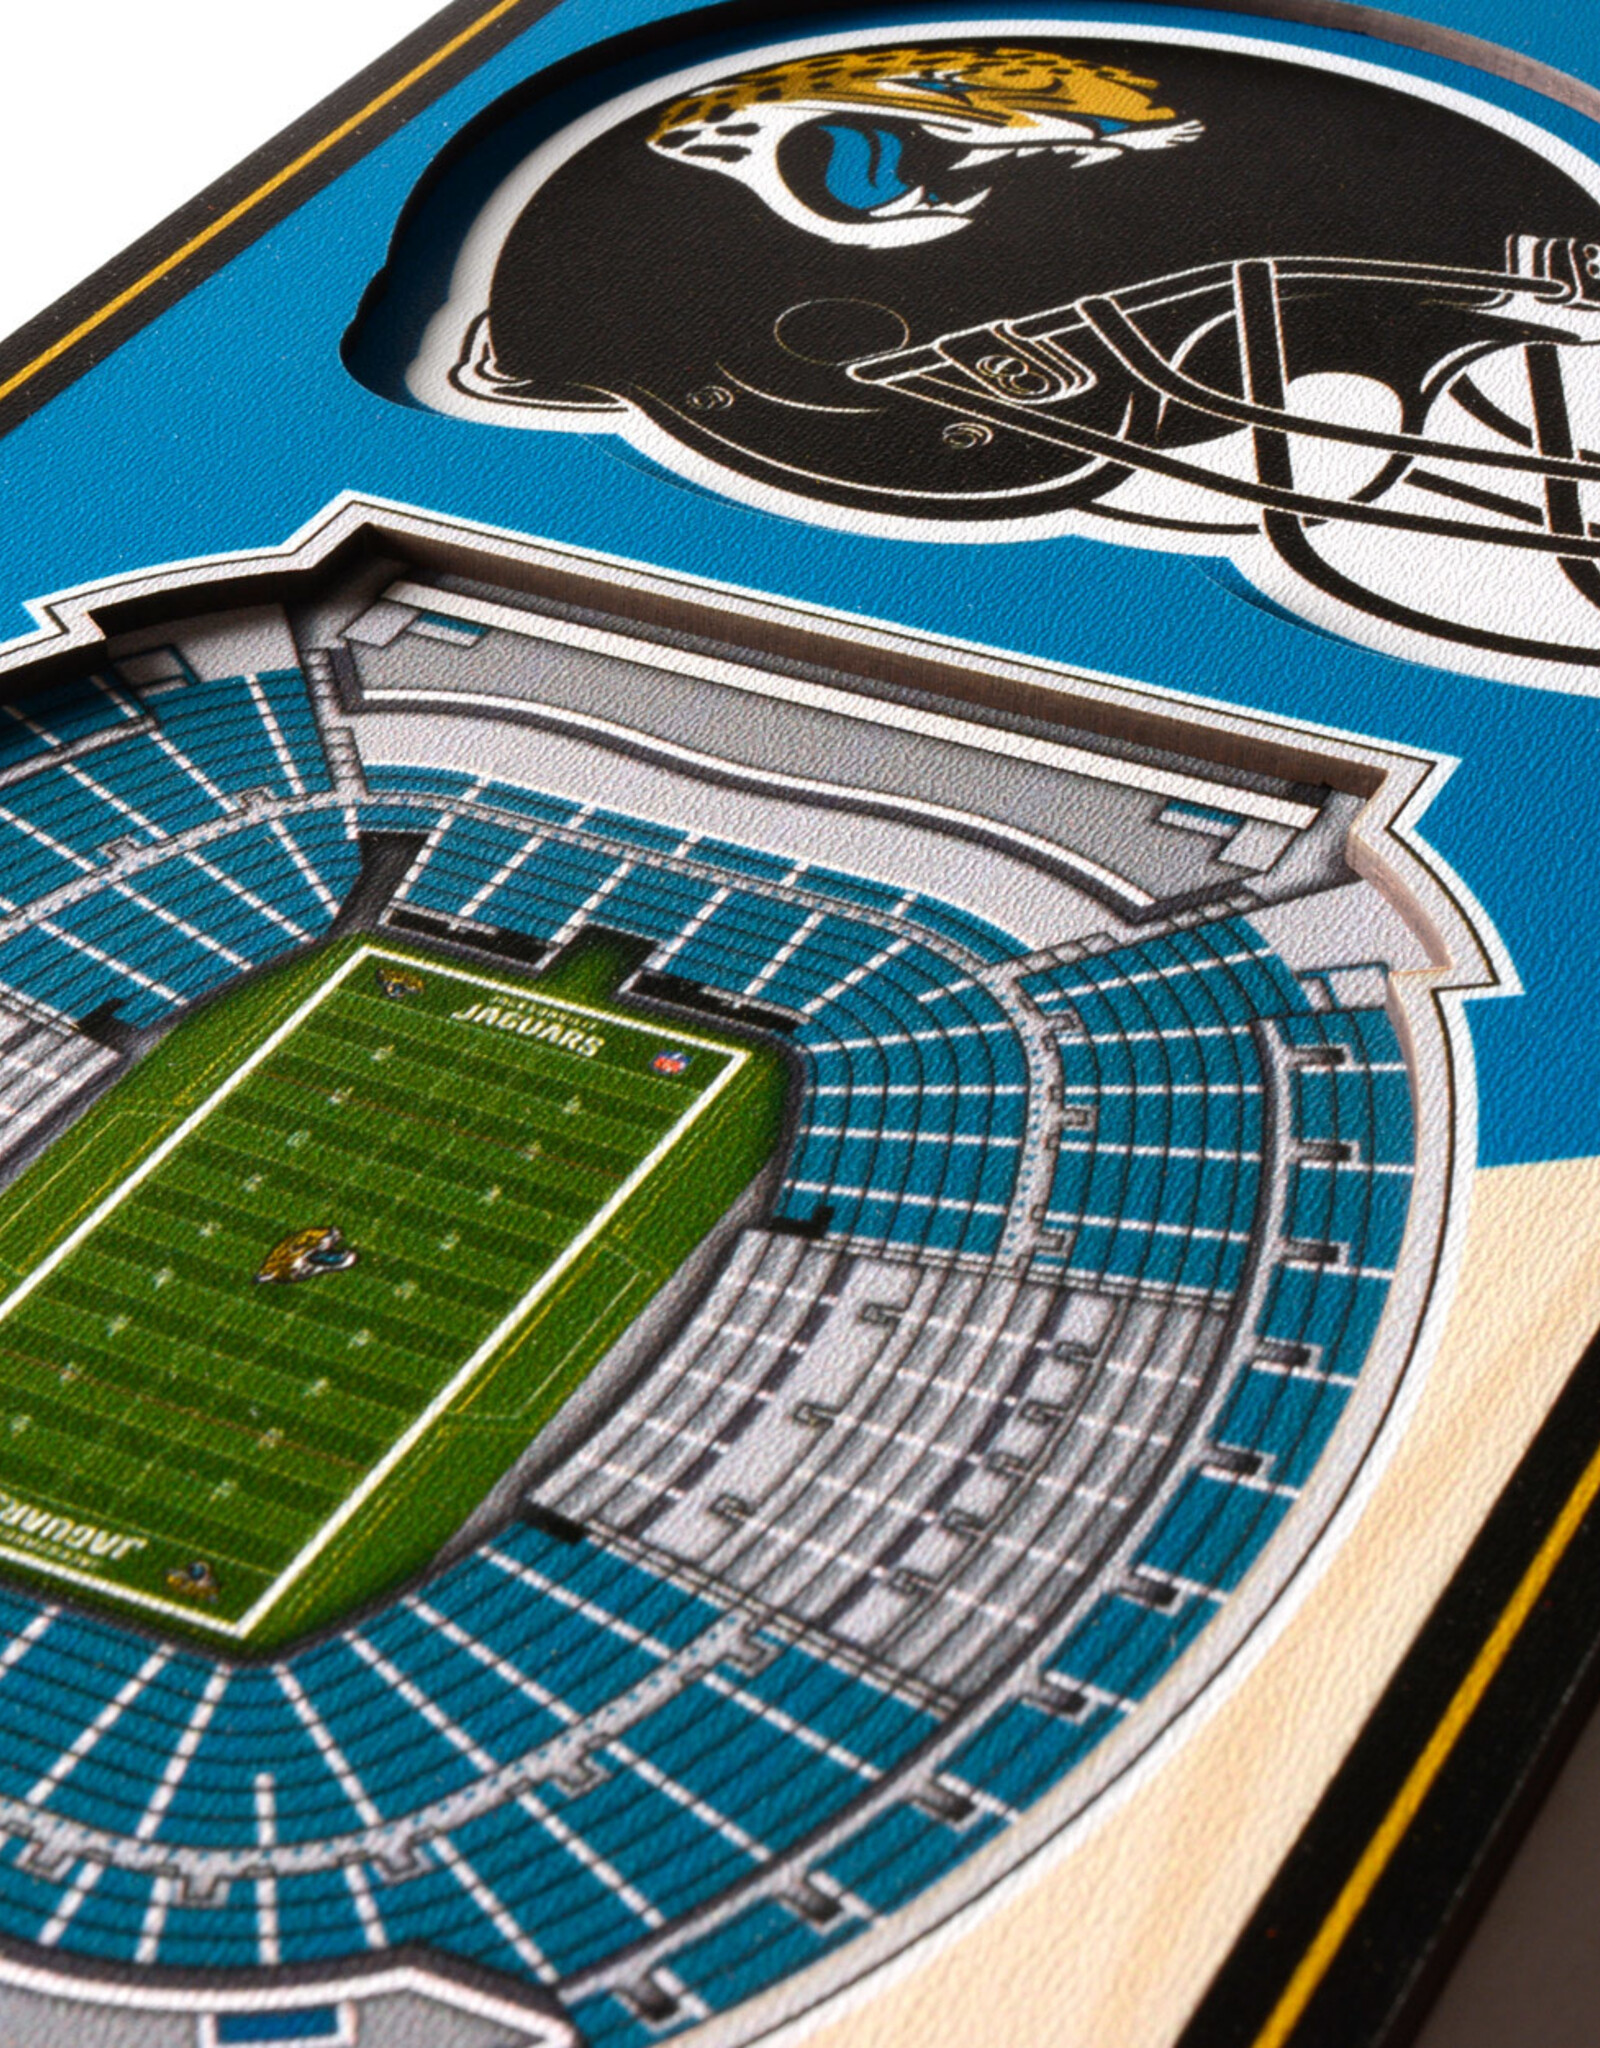 YOU THE FAN Jacksonville Jaguars 3D StadiumView 6x19 Banner